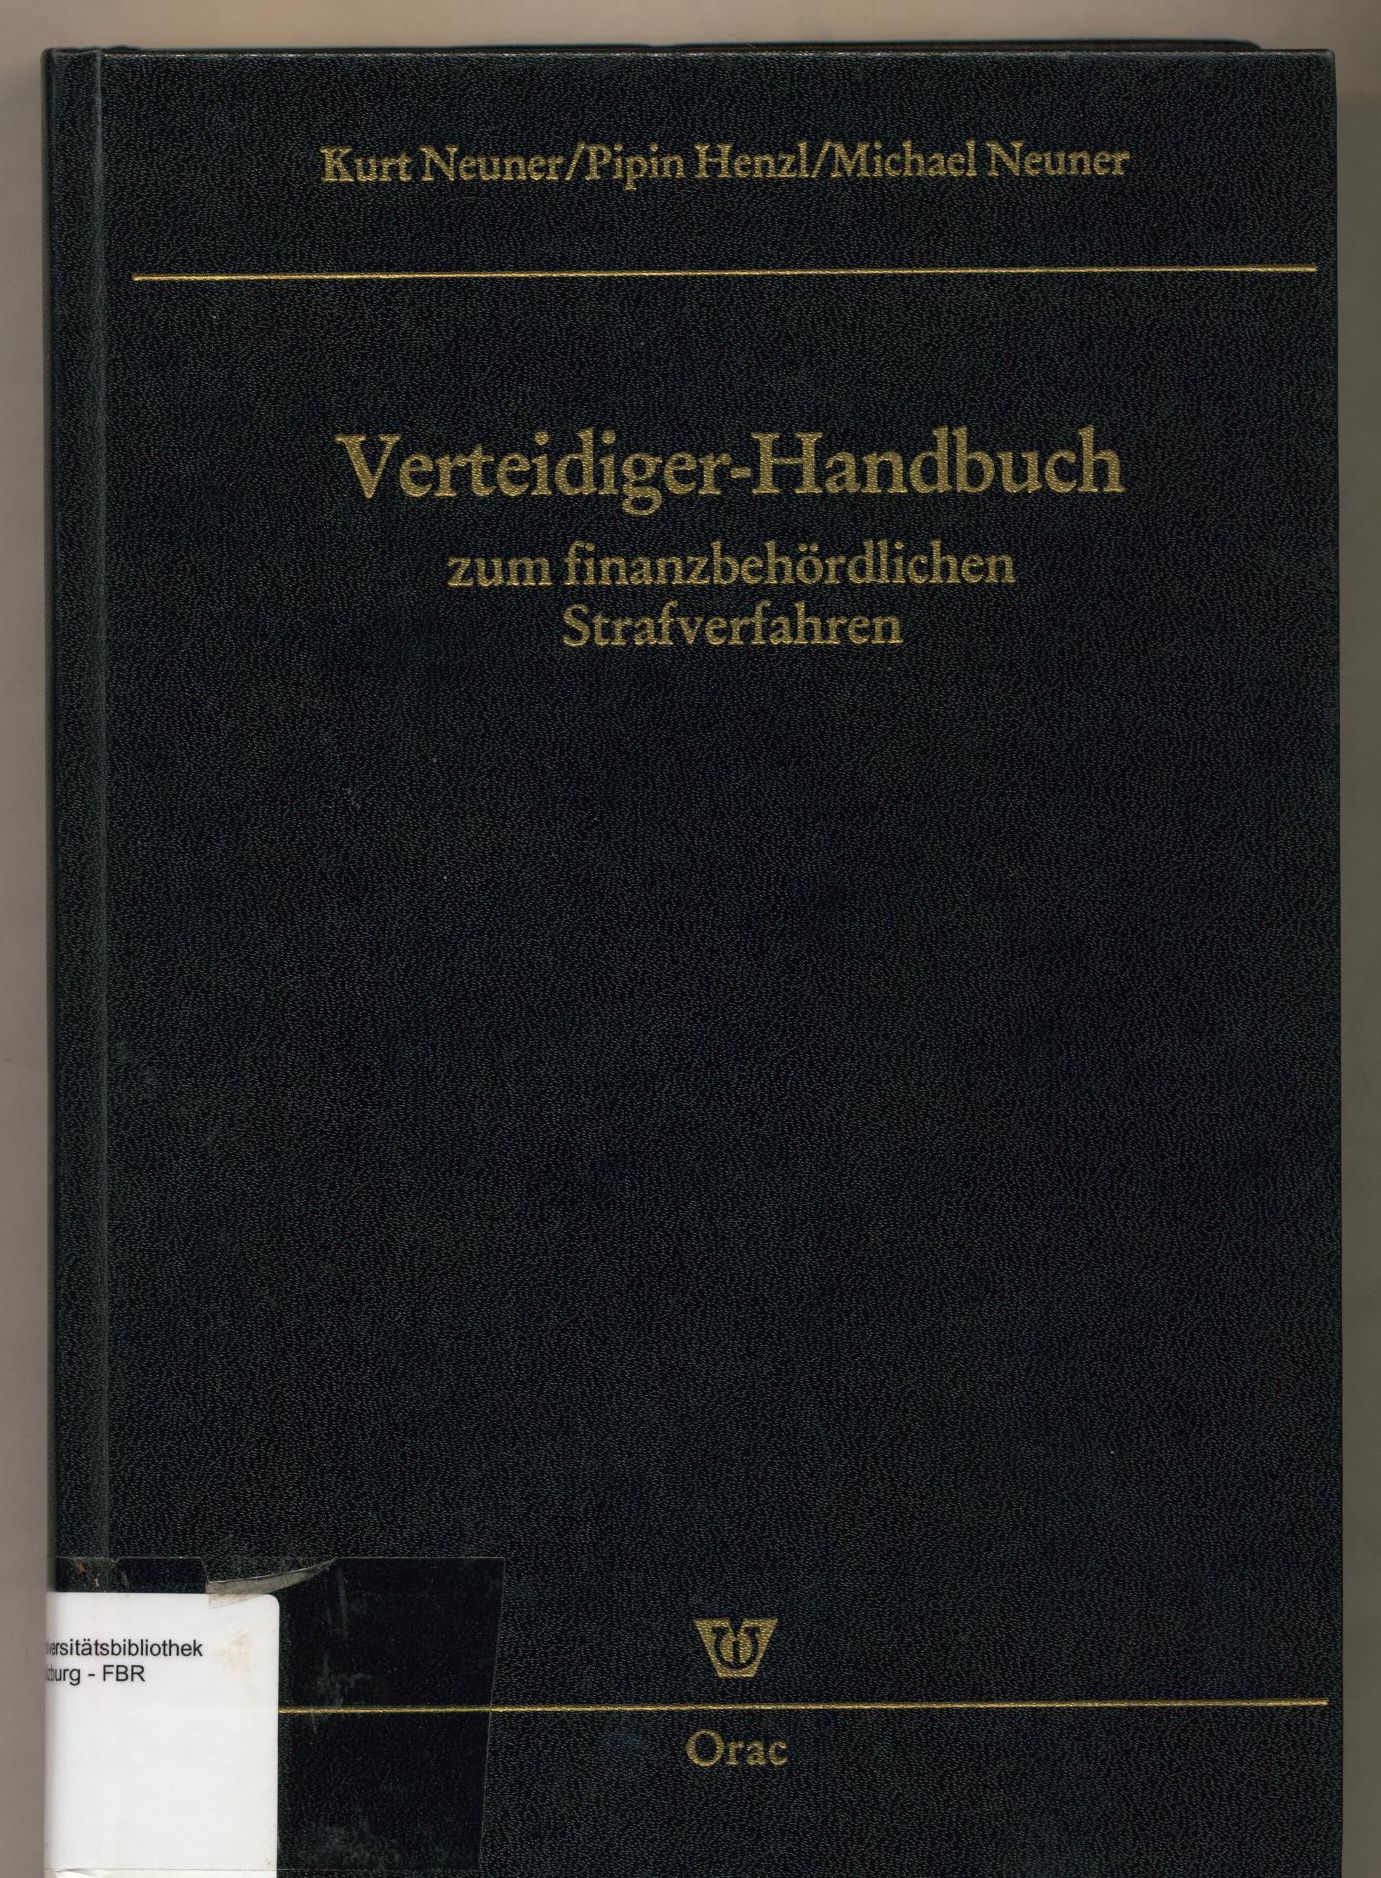 Verteidiger-Handbuch zum finanzbehördlichen Strafverfahren. von Kurt Neuner ; Pipin Henzl ; Michael Neuner